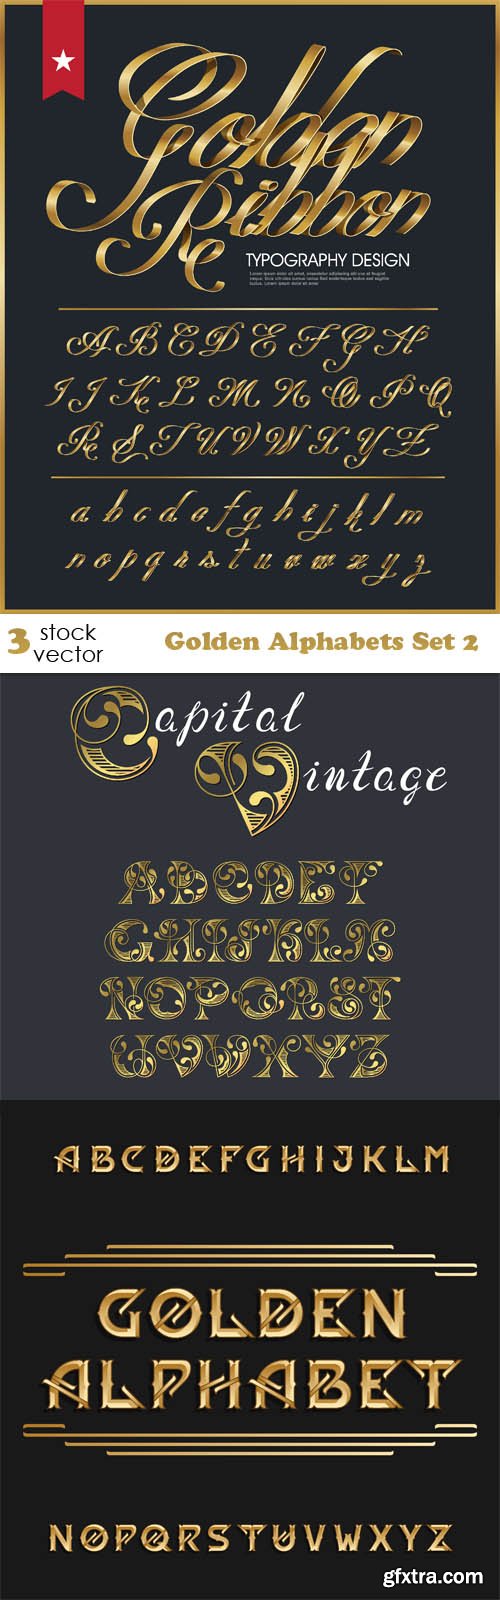 Vectors - Golden Alphabets Set 2